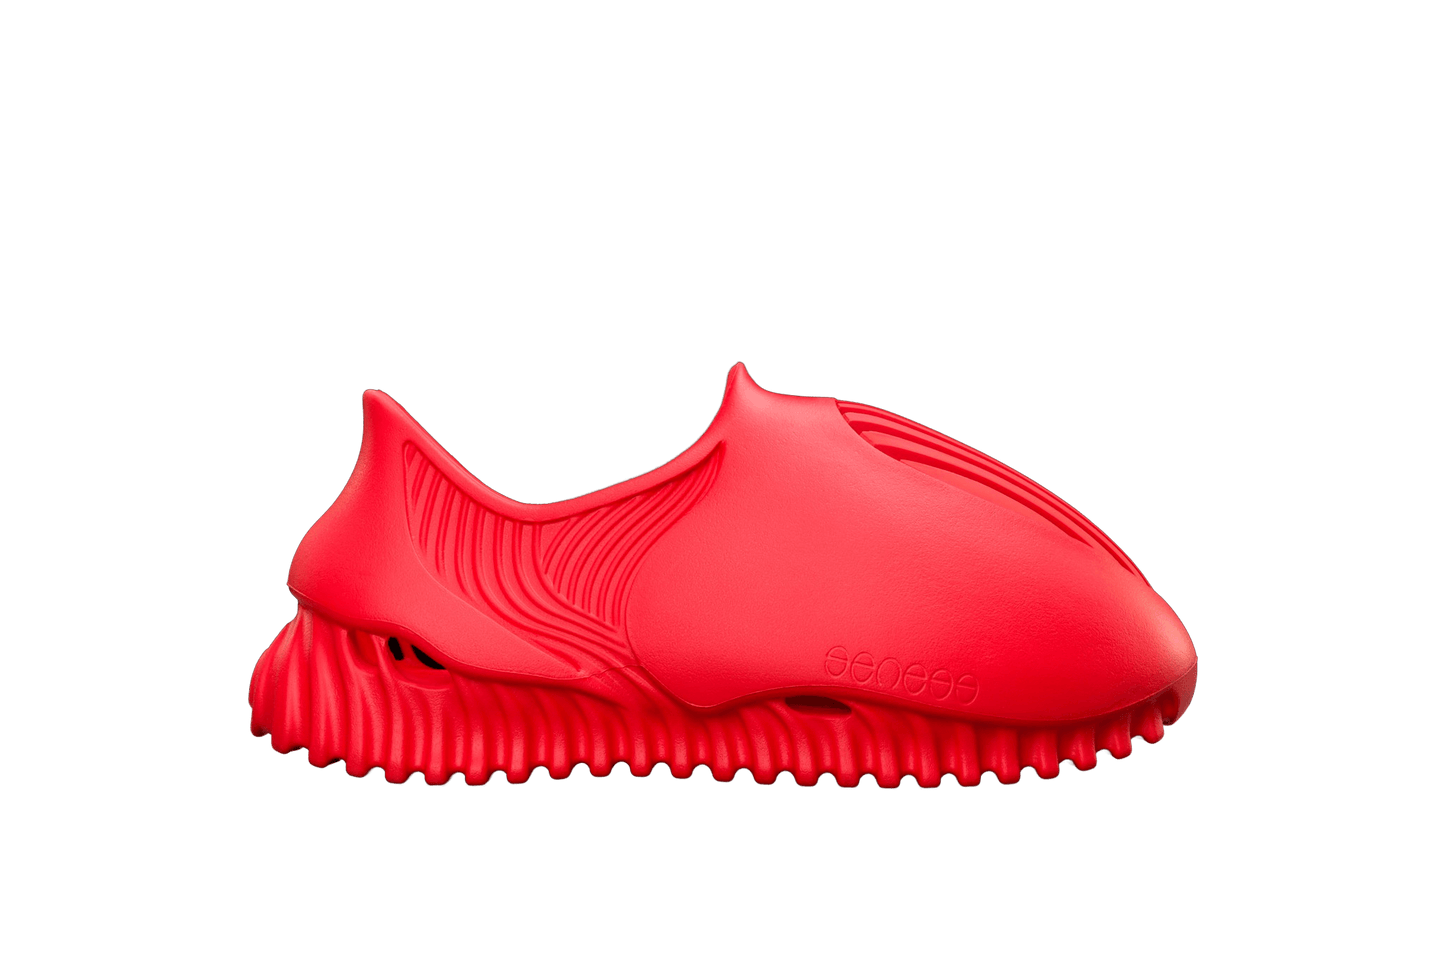 GENEGG Foam Runner Whale Ruby Red - Lo10M